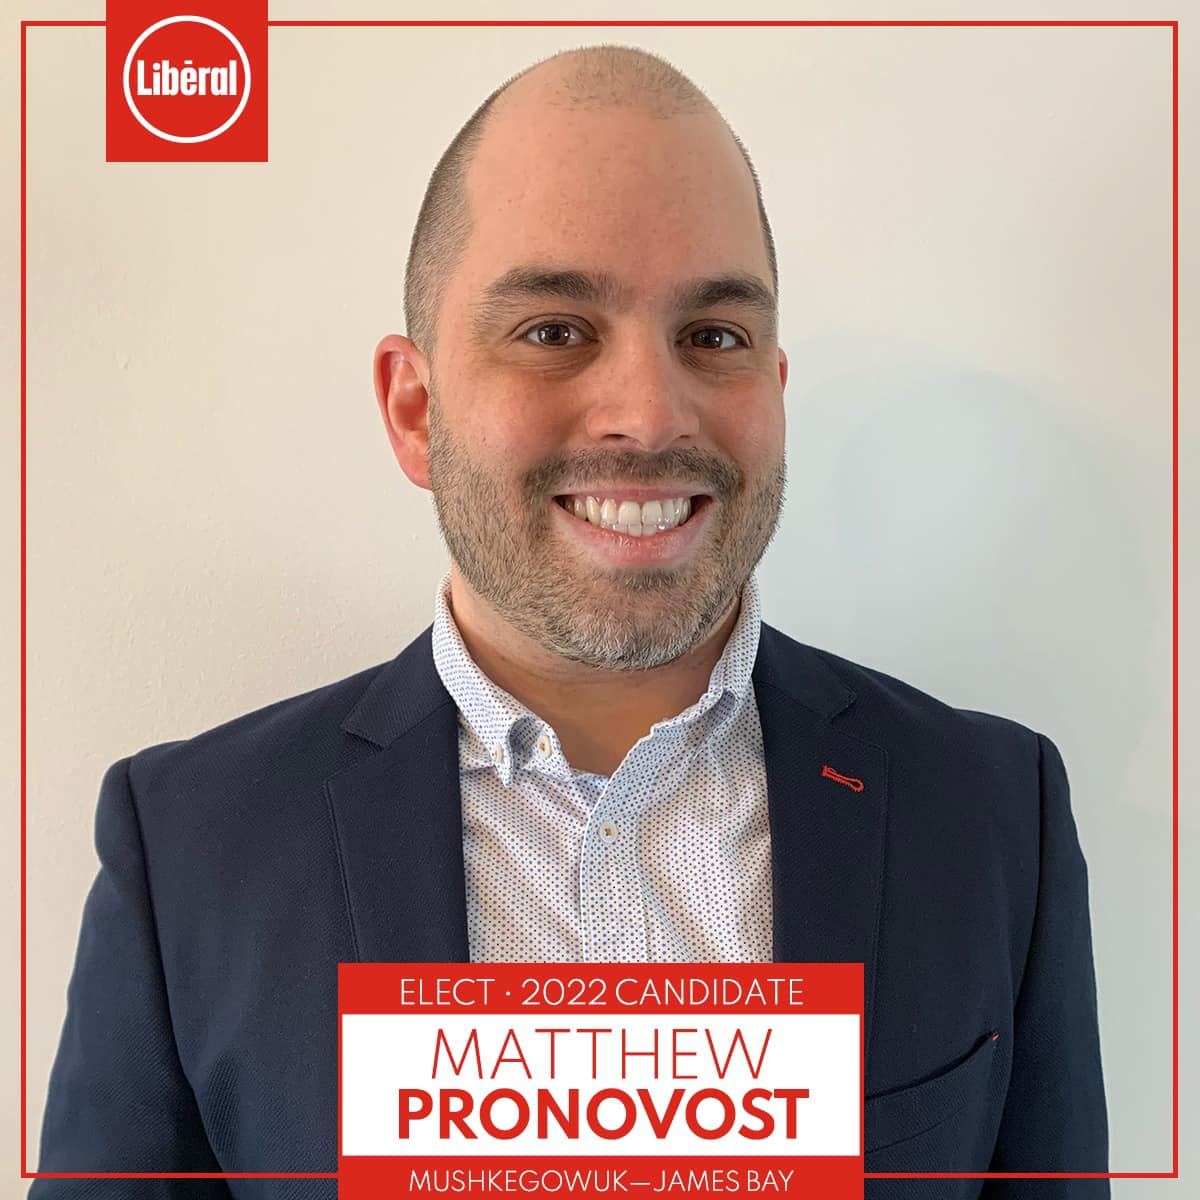 Candidat libéral de la région : Matthew Pronovost